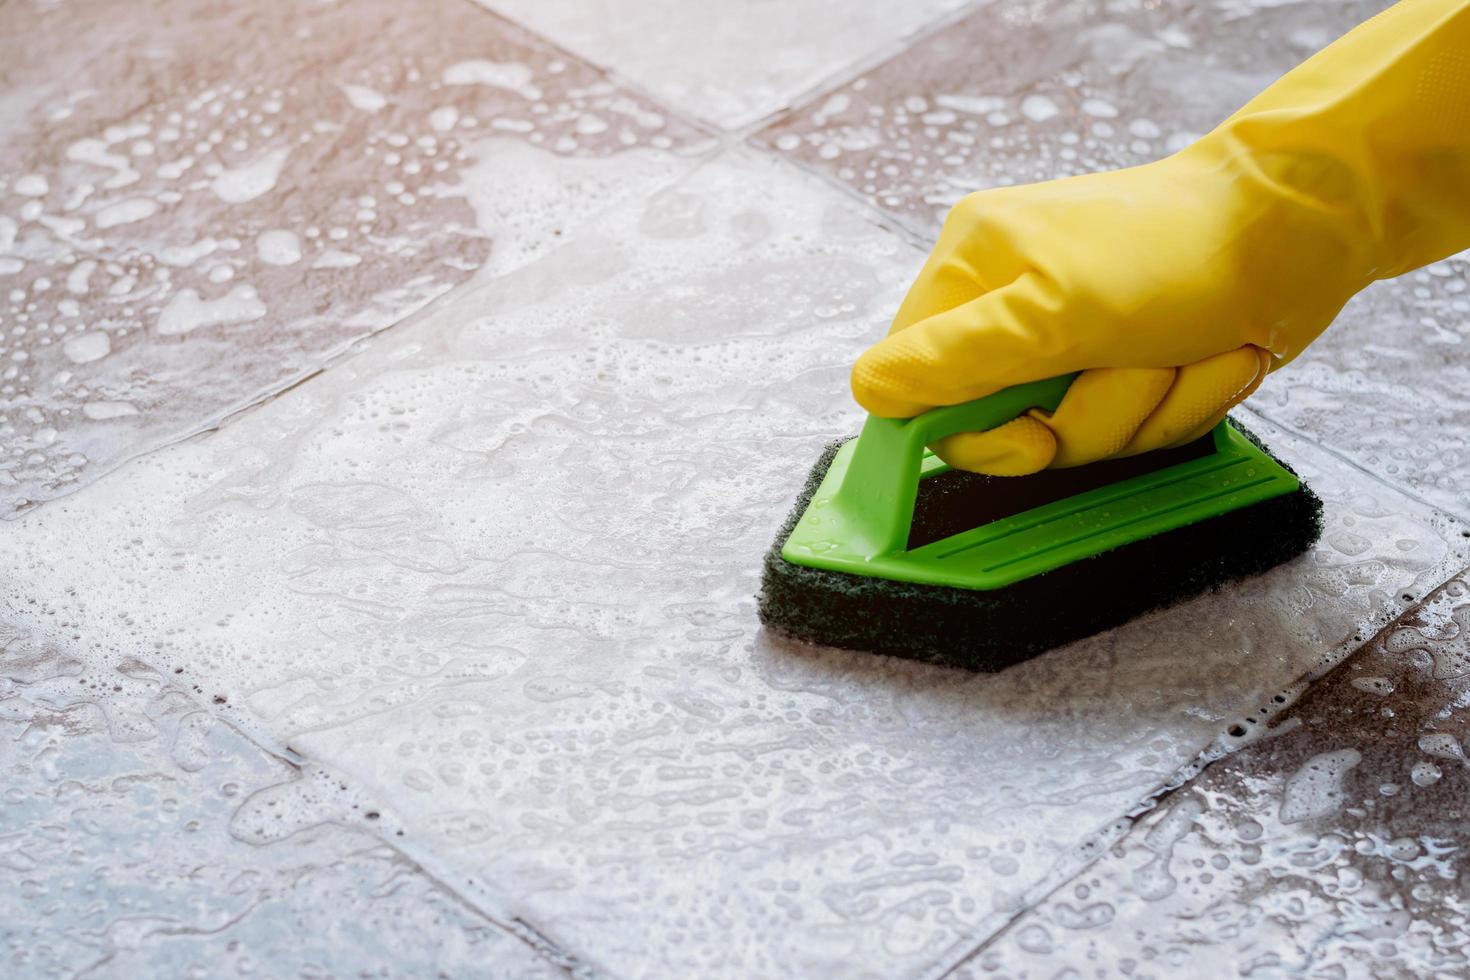 Las manos humanas con guantes de goma amarillos están usando una fregadora de piso de plástico de color verde para fregar el piso de baldosas con un limpiador de pisos. foto